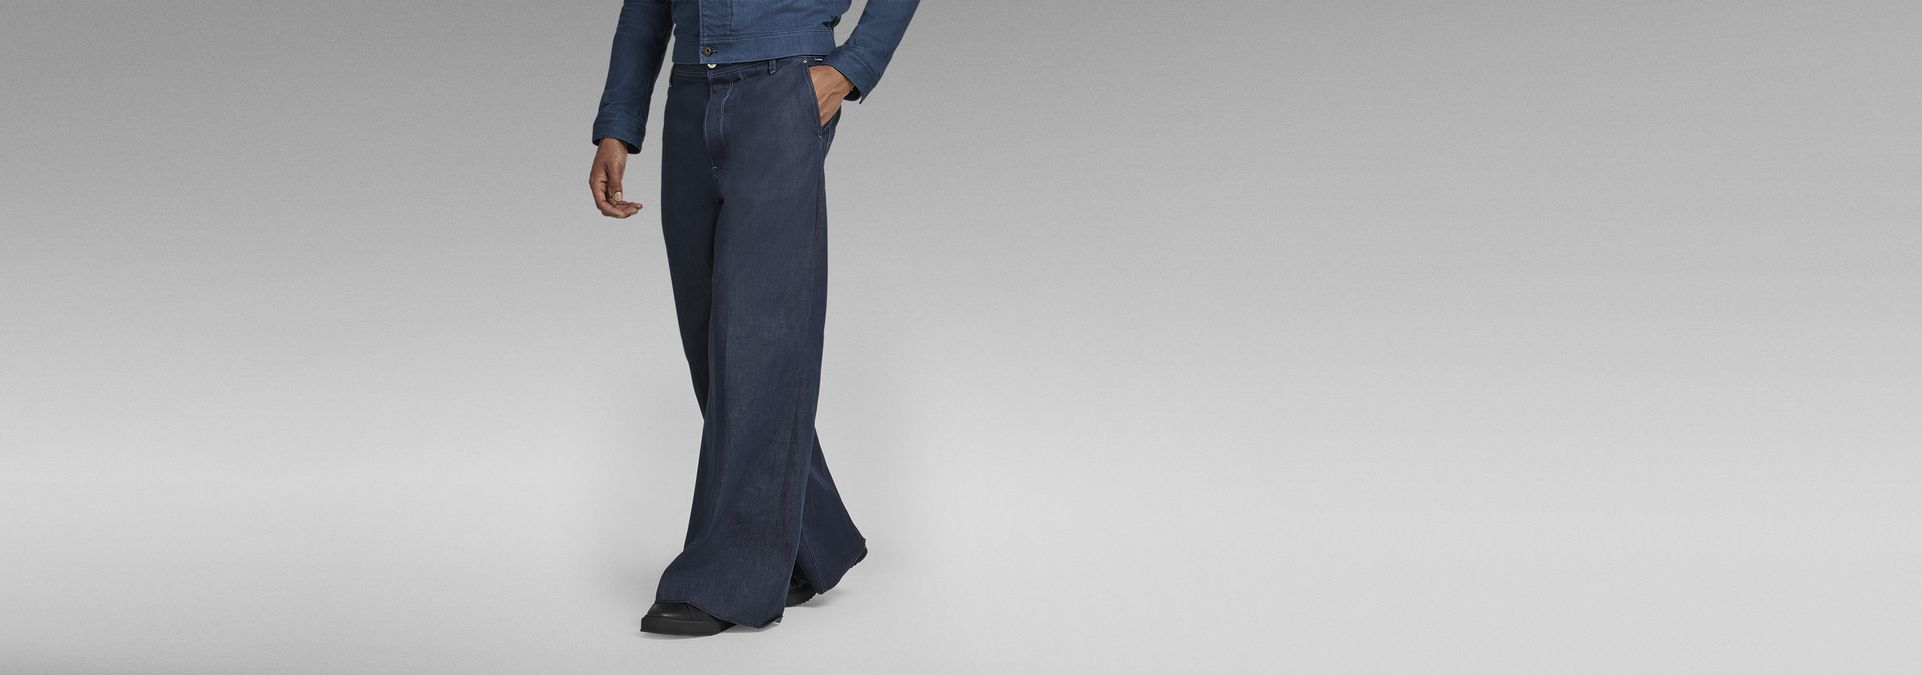 G-Star Raw Attacc Super Sottile-W36 L34-Da Uomo Blu Jeans In Denim Stretch MEZON 